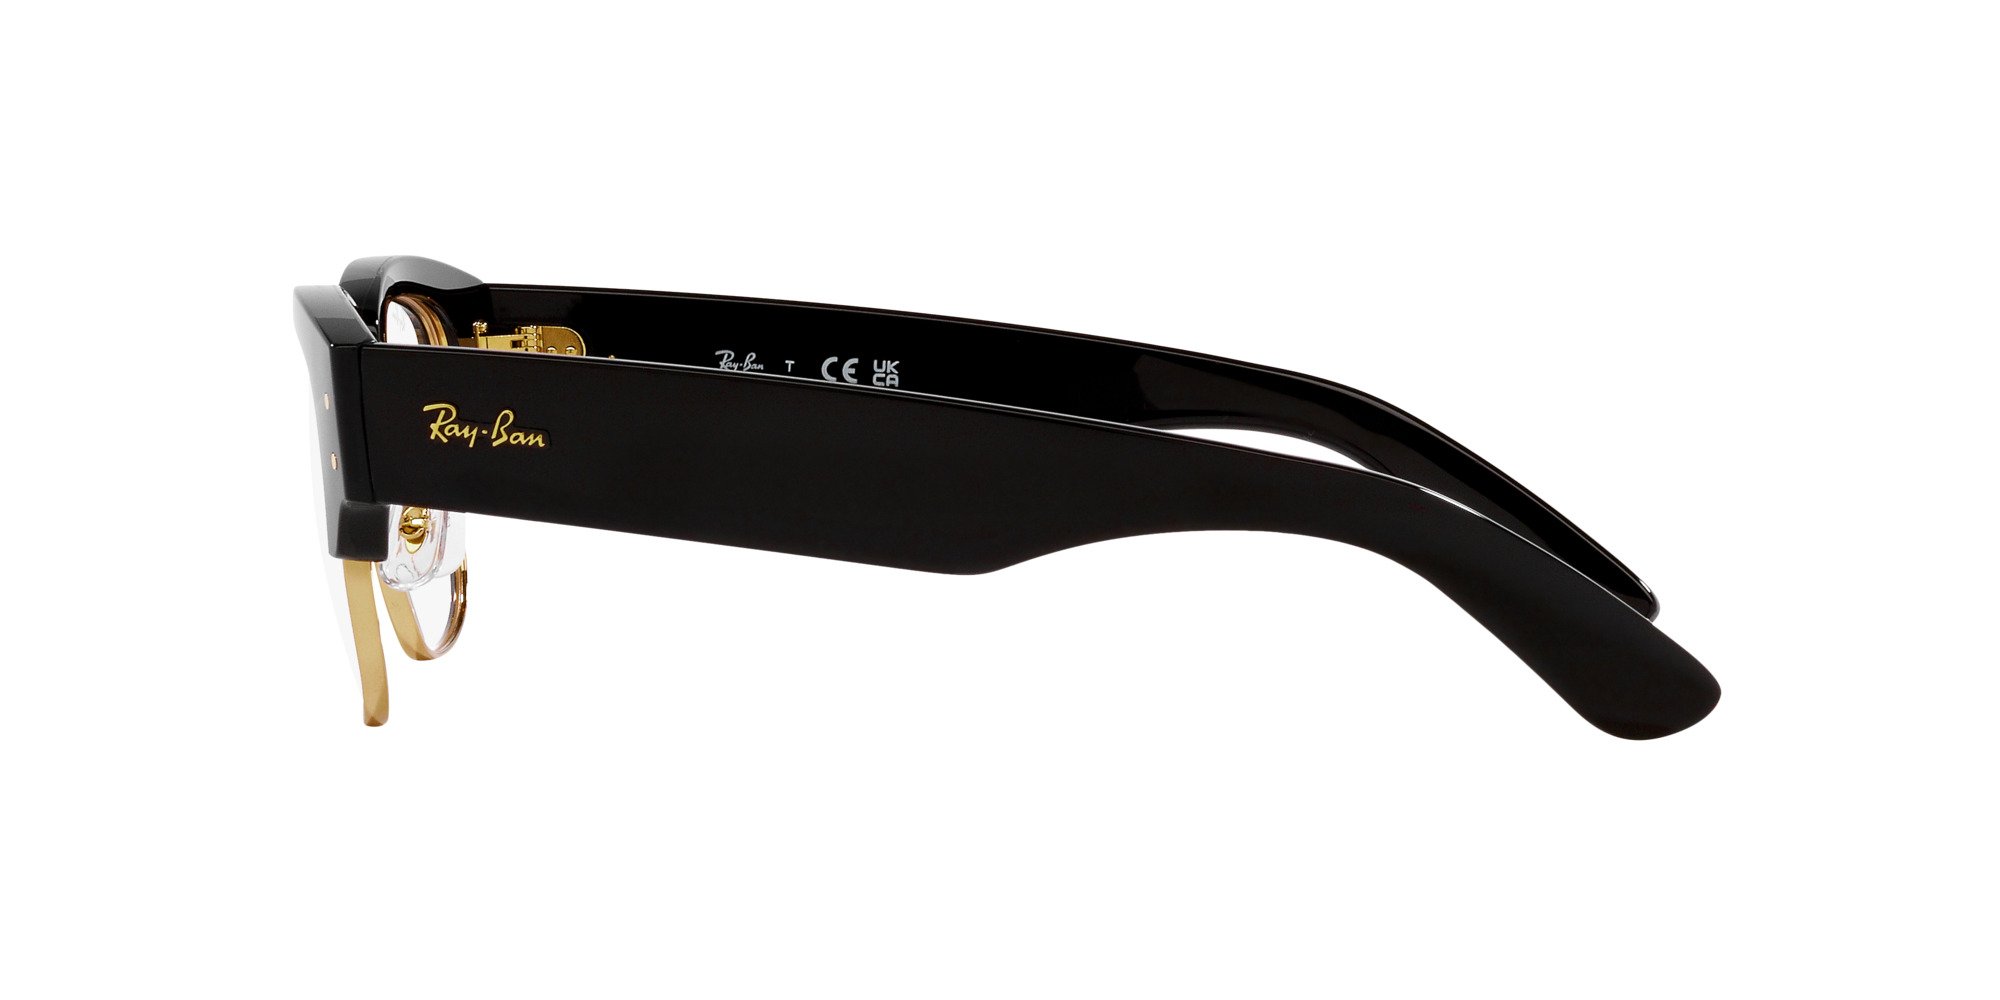 Das Bild zeigt die Korrektionsbrille RX0316V 2000 von der Marke Ray Ban in schwarz.